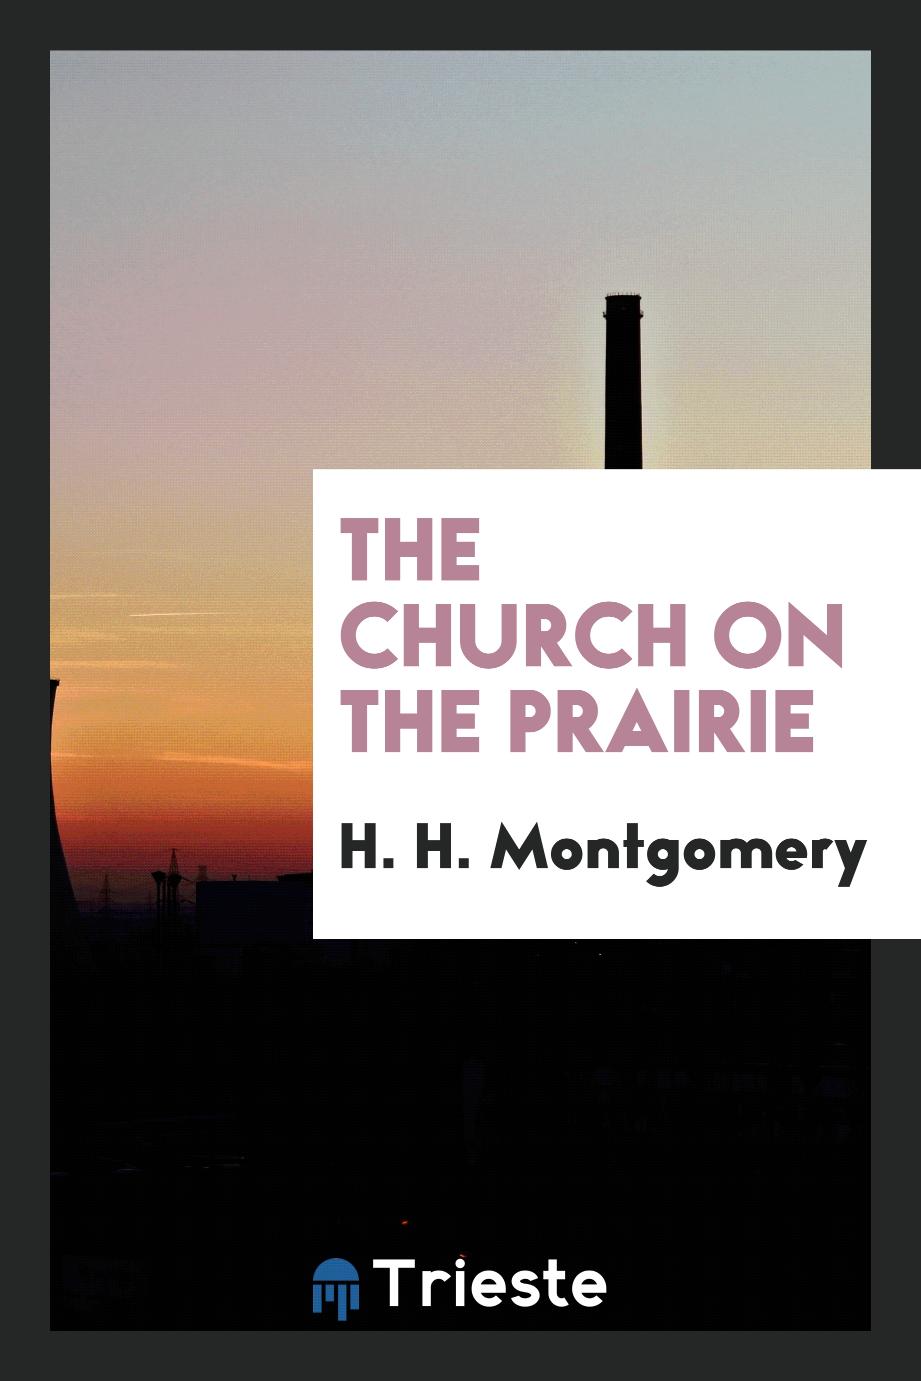 The Church on the prairie